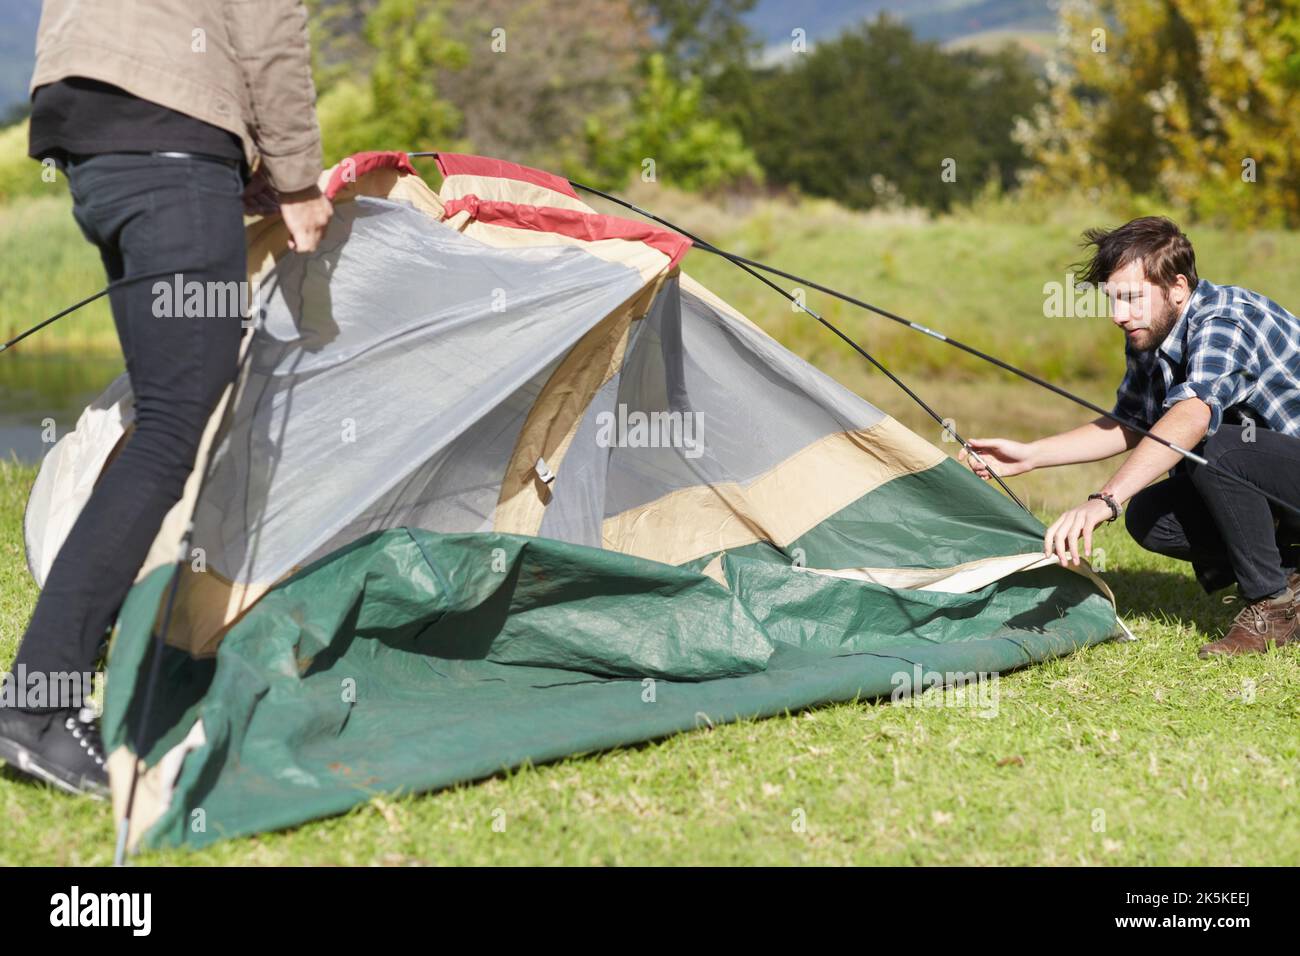 Teamarbeit erledigt die Arbeit. Zwei junge Männer, die im Freien ein Zelt aufschlagen. Stockfoto